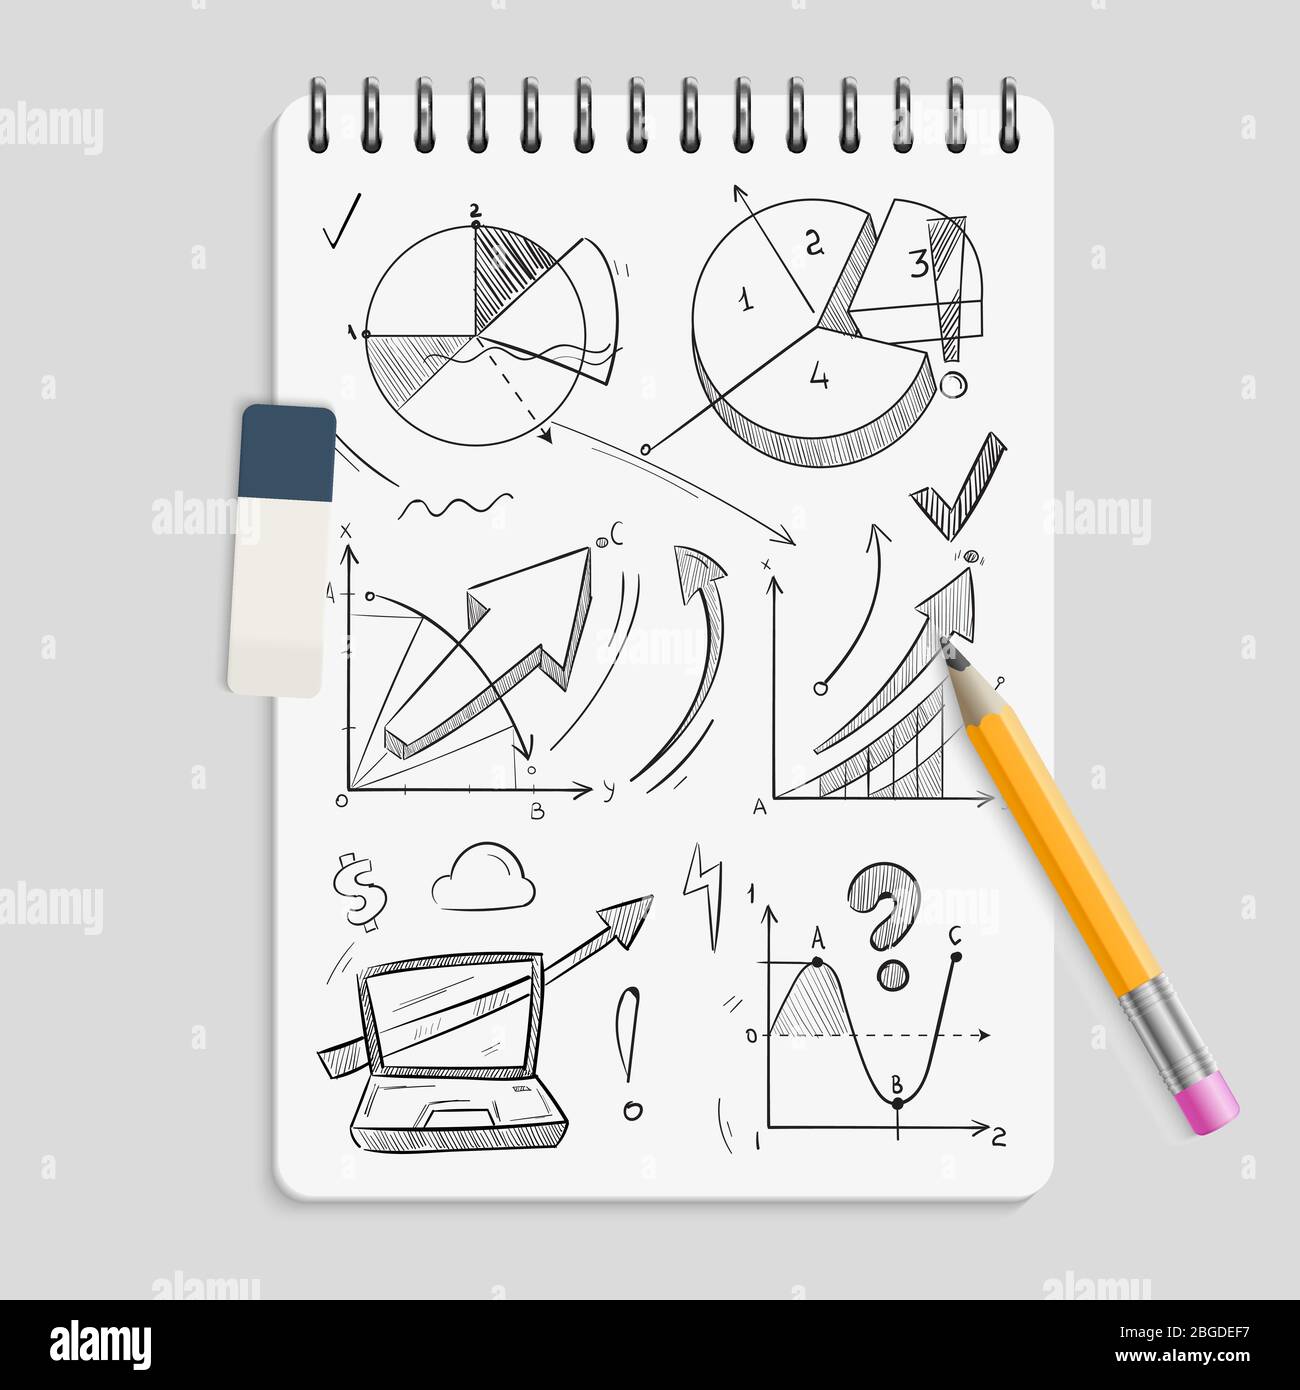 Croquis de crayon graphique professionnel sur un ordinateur portable  réaliste avec gomme et crayon - Brainstorm concept. Dessin de dessin de  business graphisme, dessin crayon di Image Vectorielle Stock - Alamy